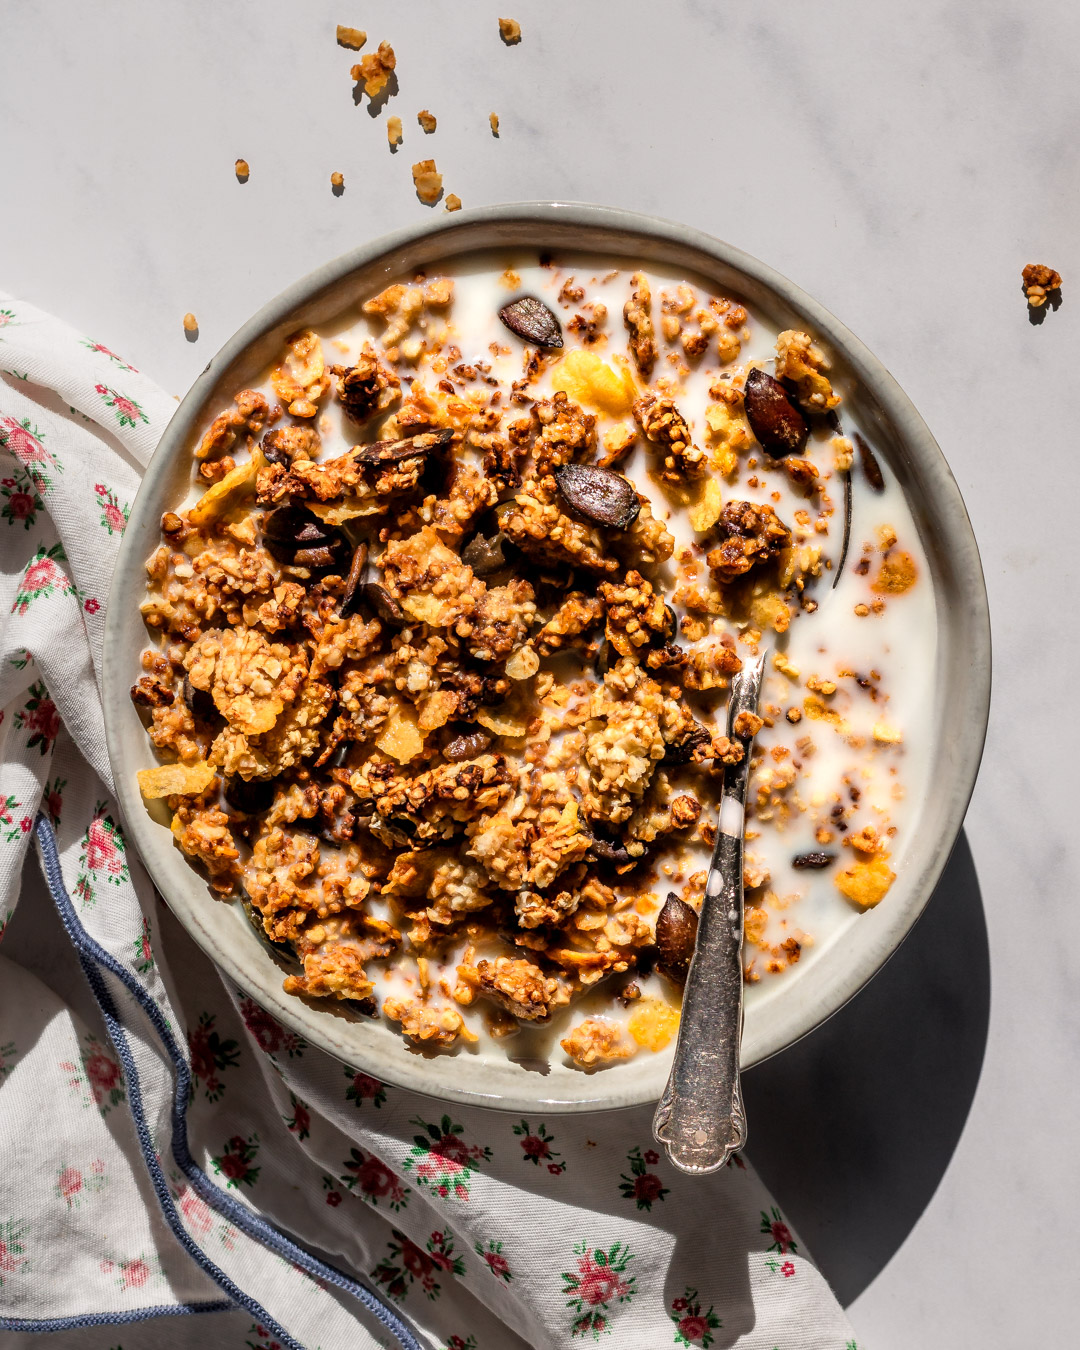 Idée recette pour le petit-déjeuner : le granola sans sucre - Les